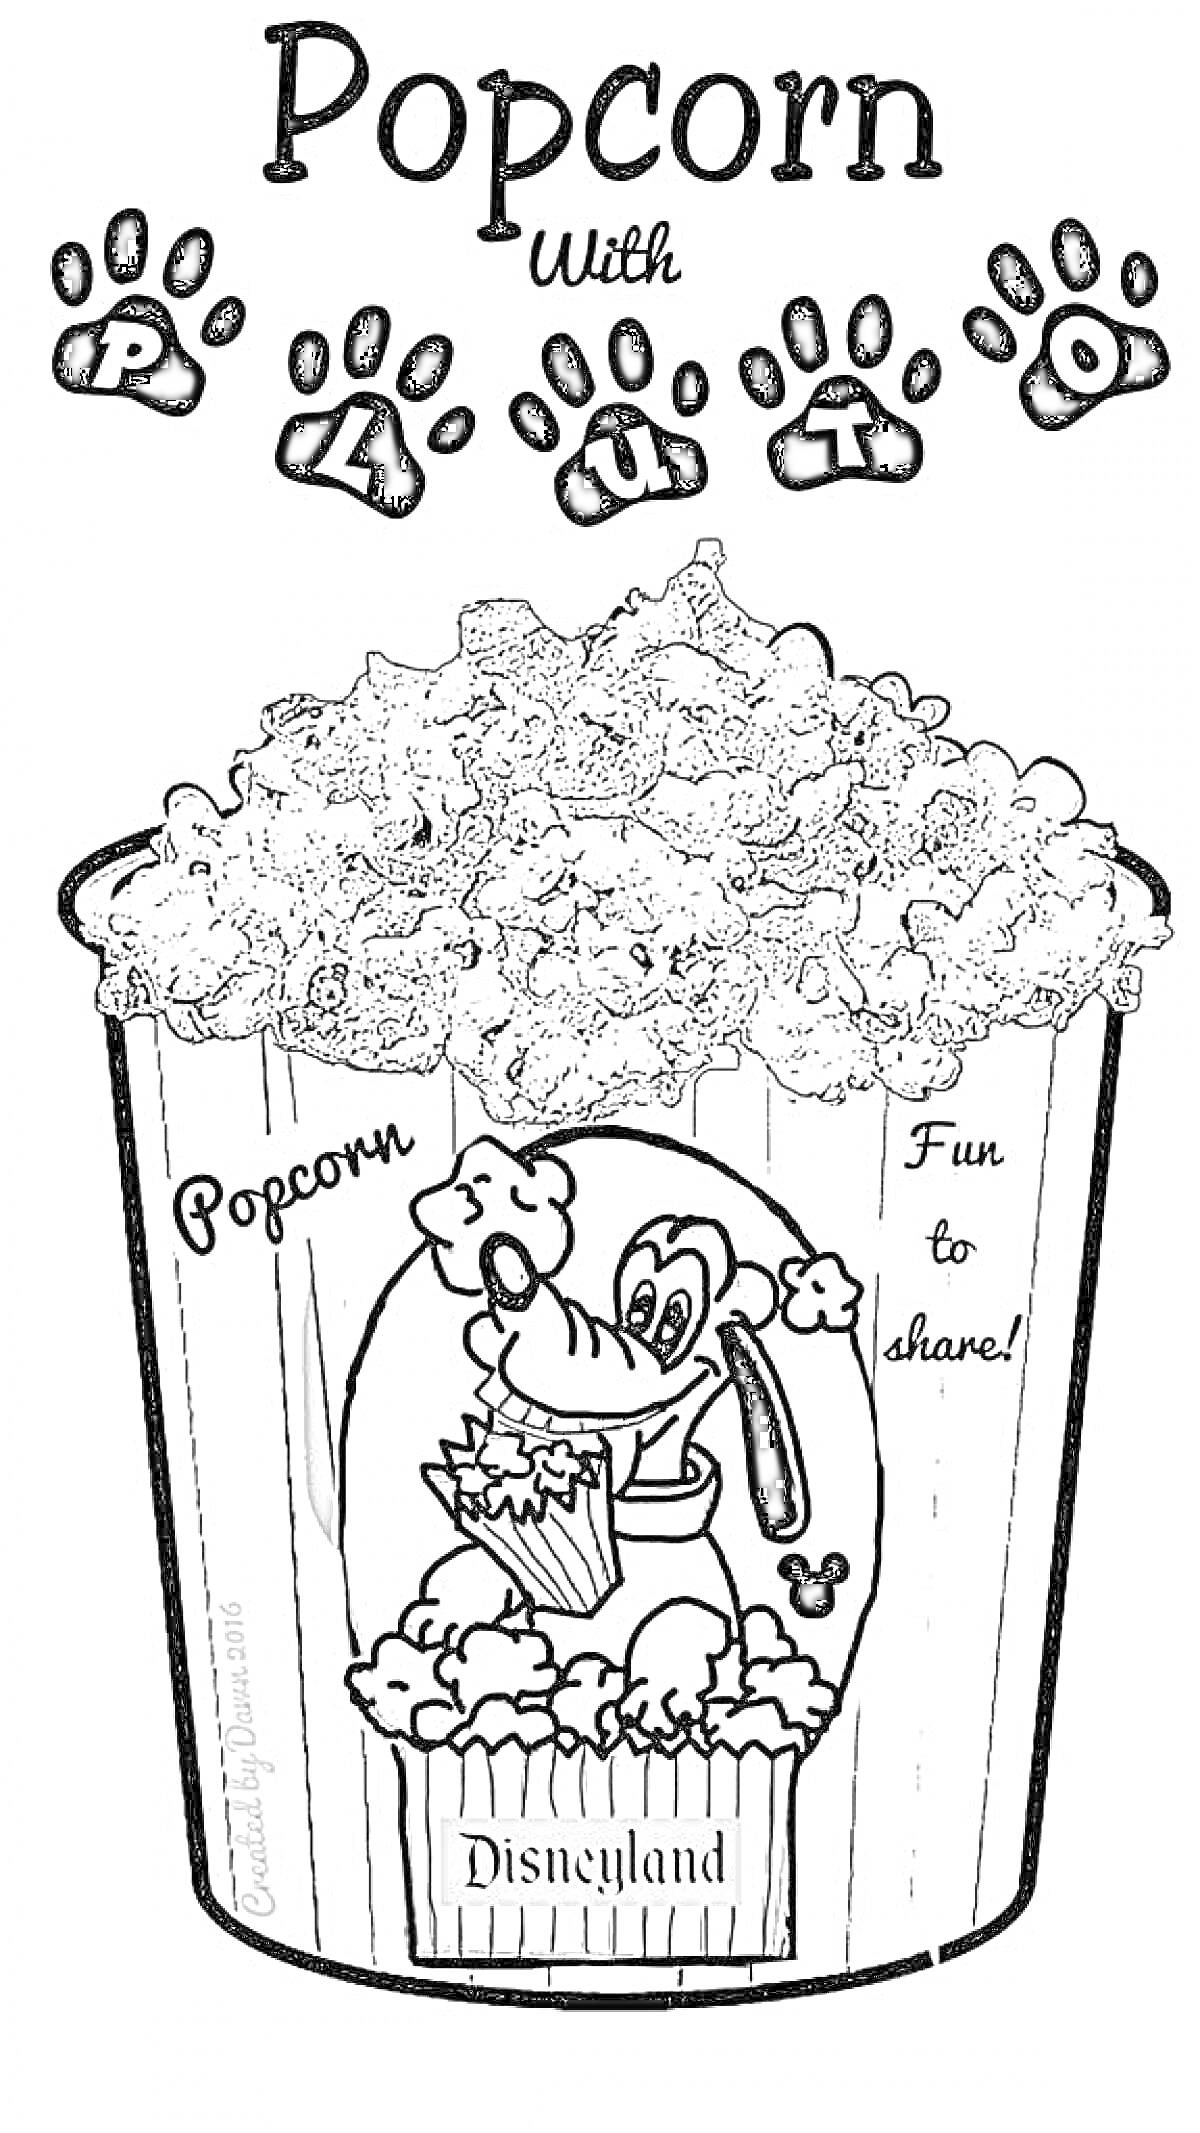 Раскраска Попкорн с Плуто, ведро попкорна, тема Диснейленд, надписи с лапками